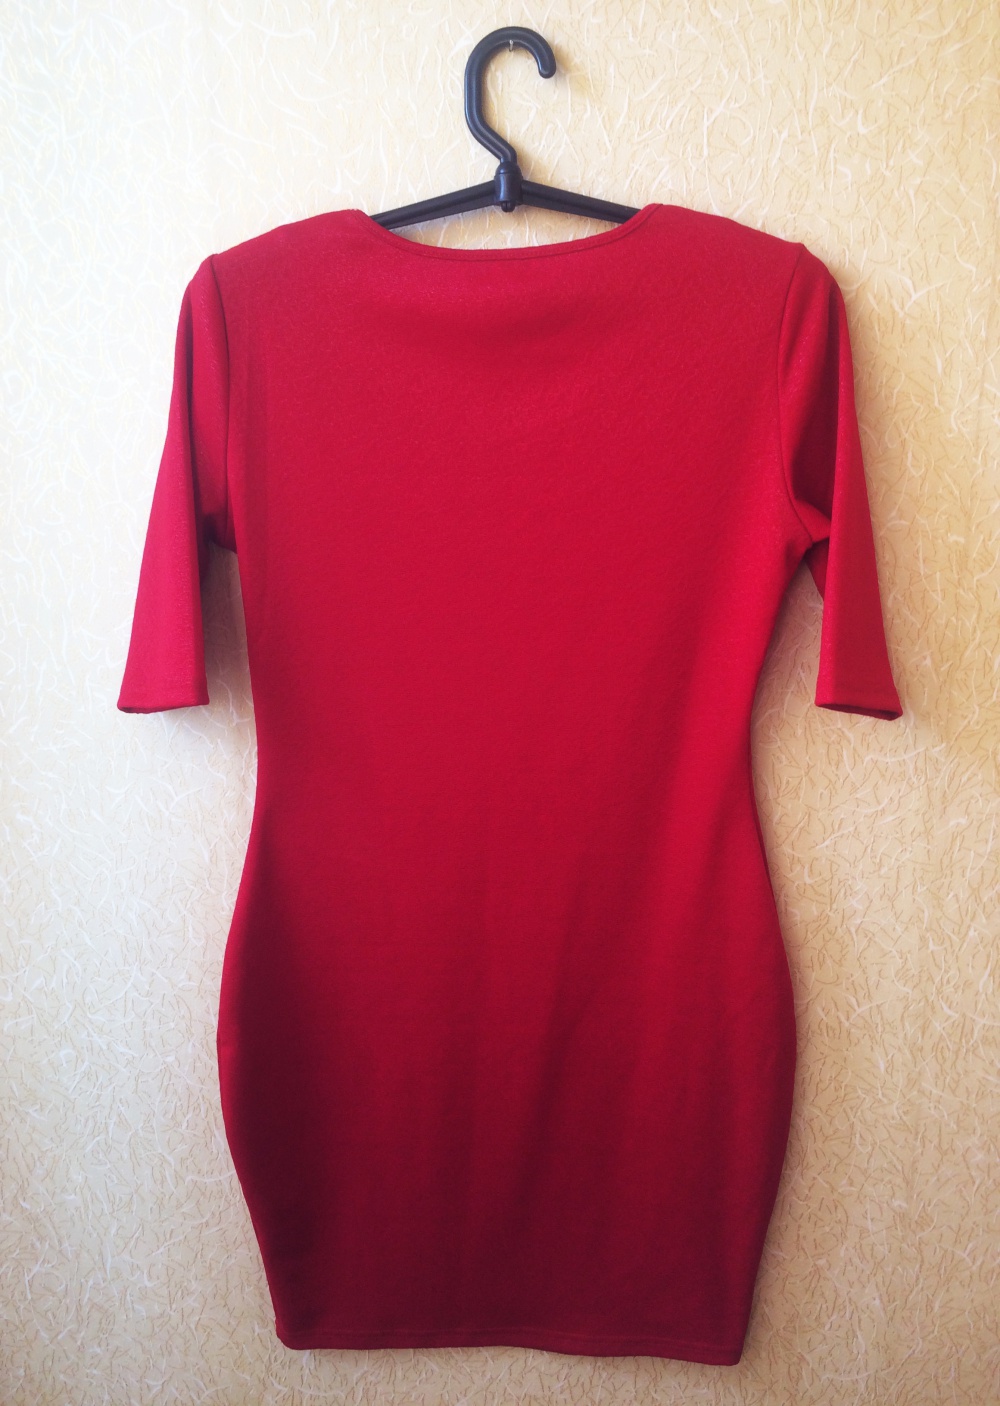 Новое красное облегающее платье AX Paris (р-р 14 UK или 46-48)